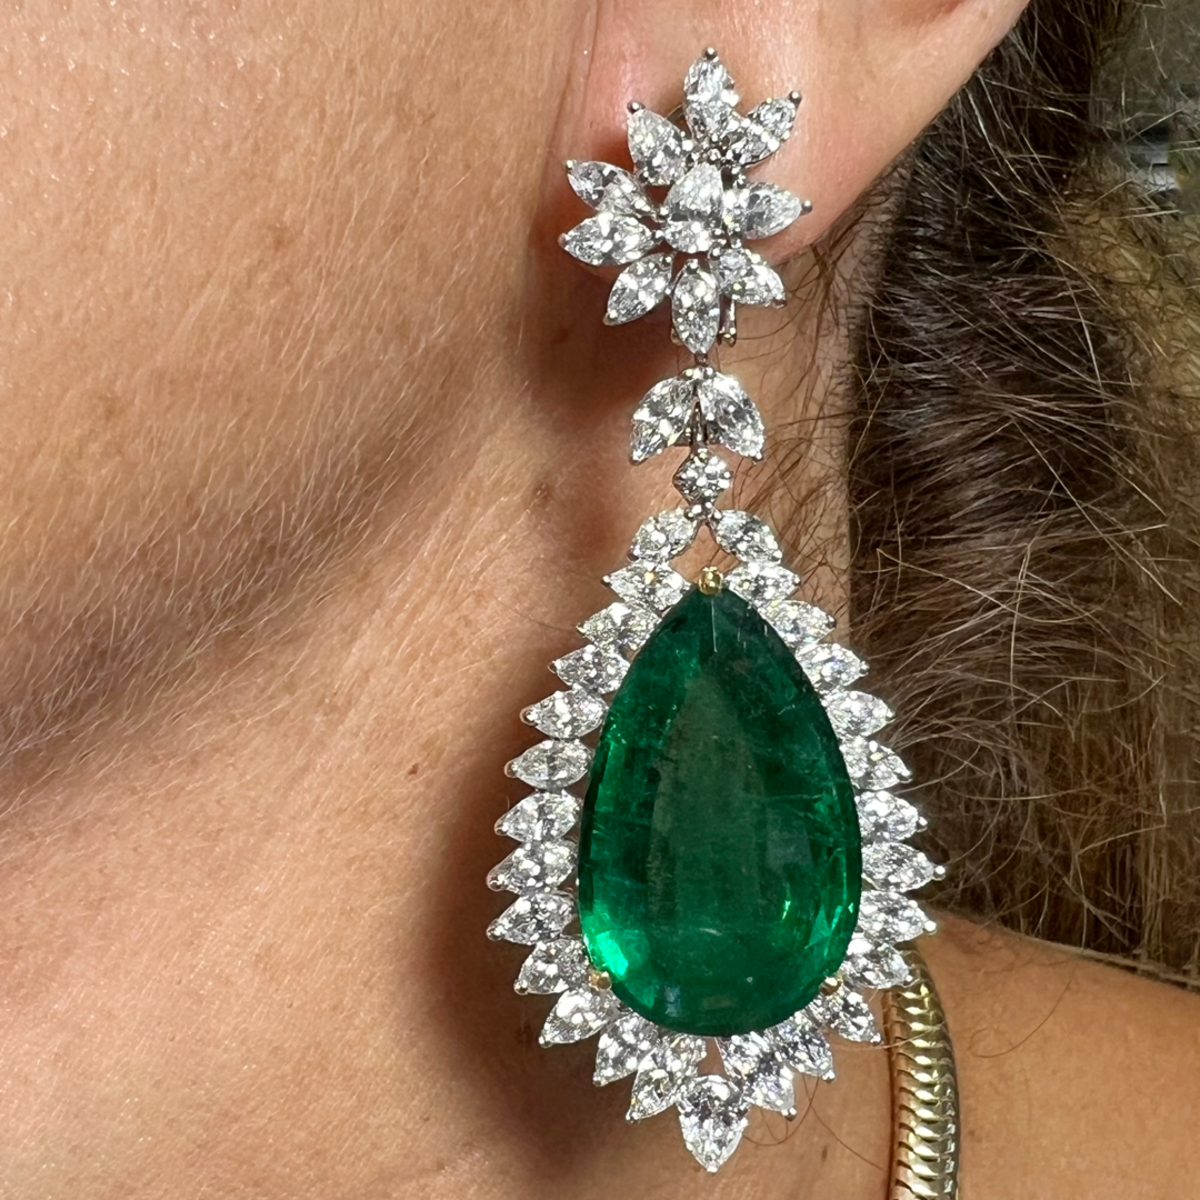 Post-1980s Platinum & 18KT White Gold Emerald & Diamond Earrings worn on ear